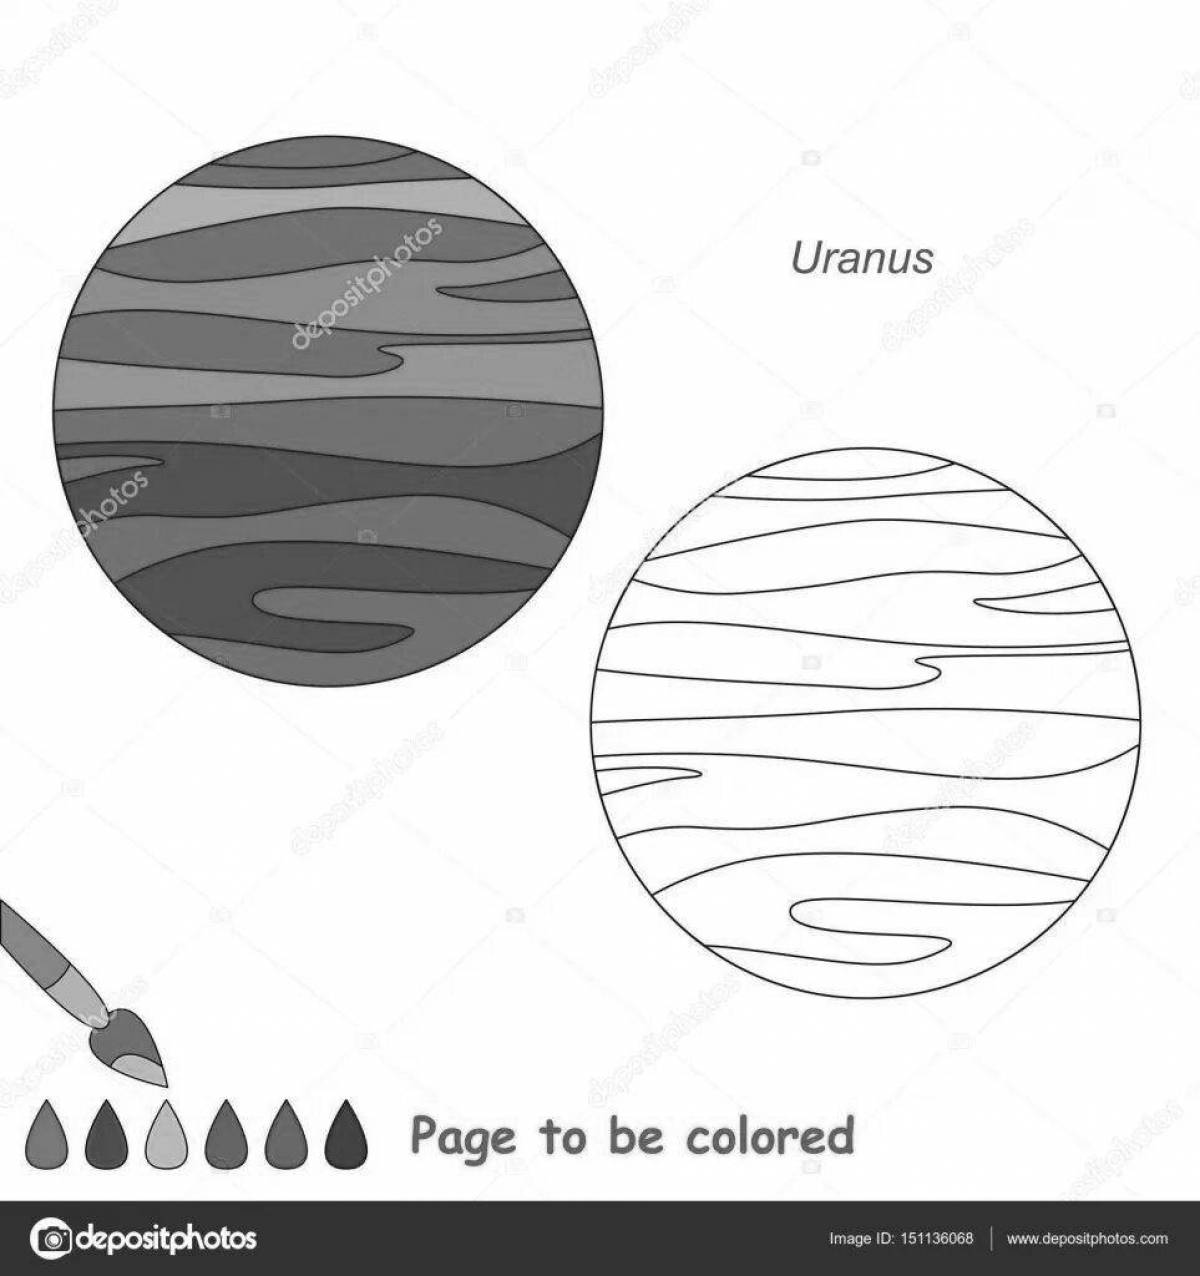 Delightful coloring planet uranus